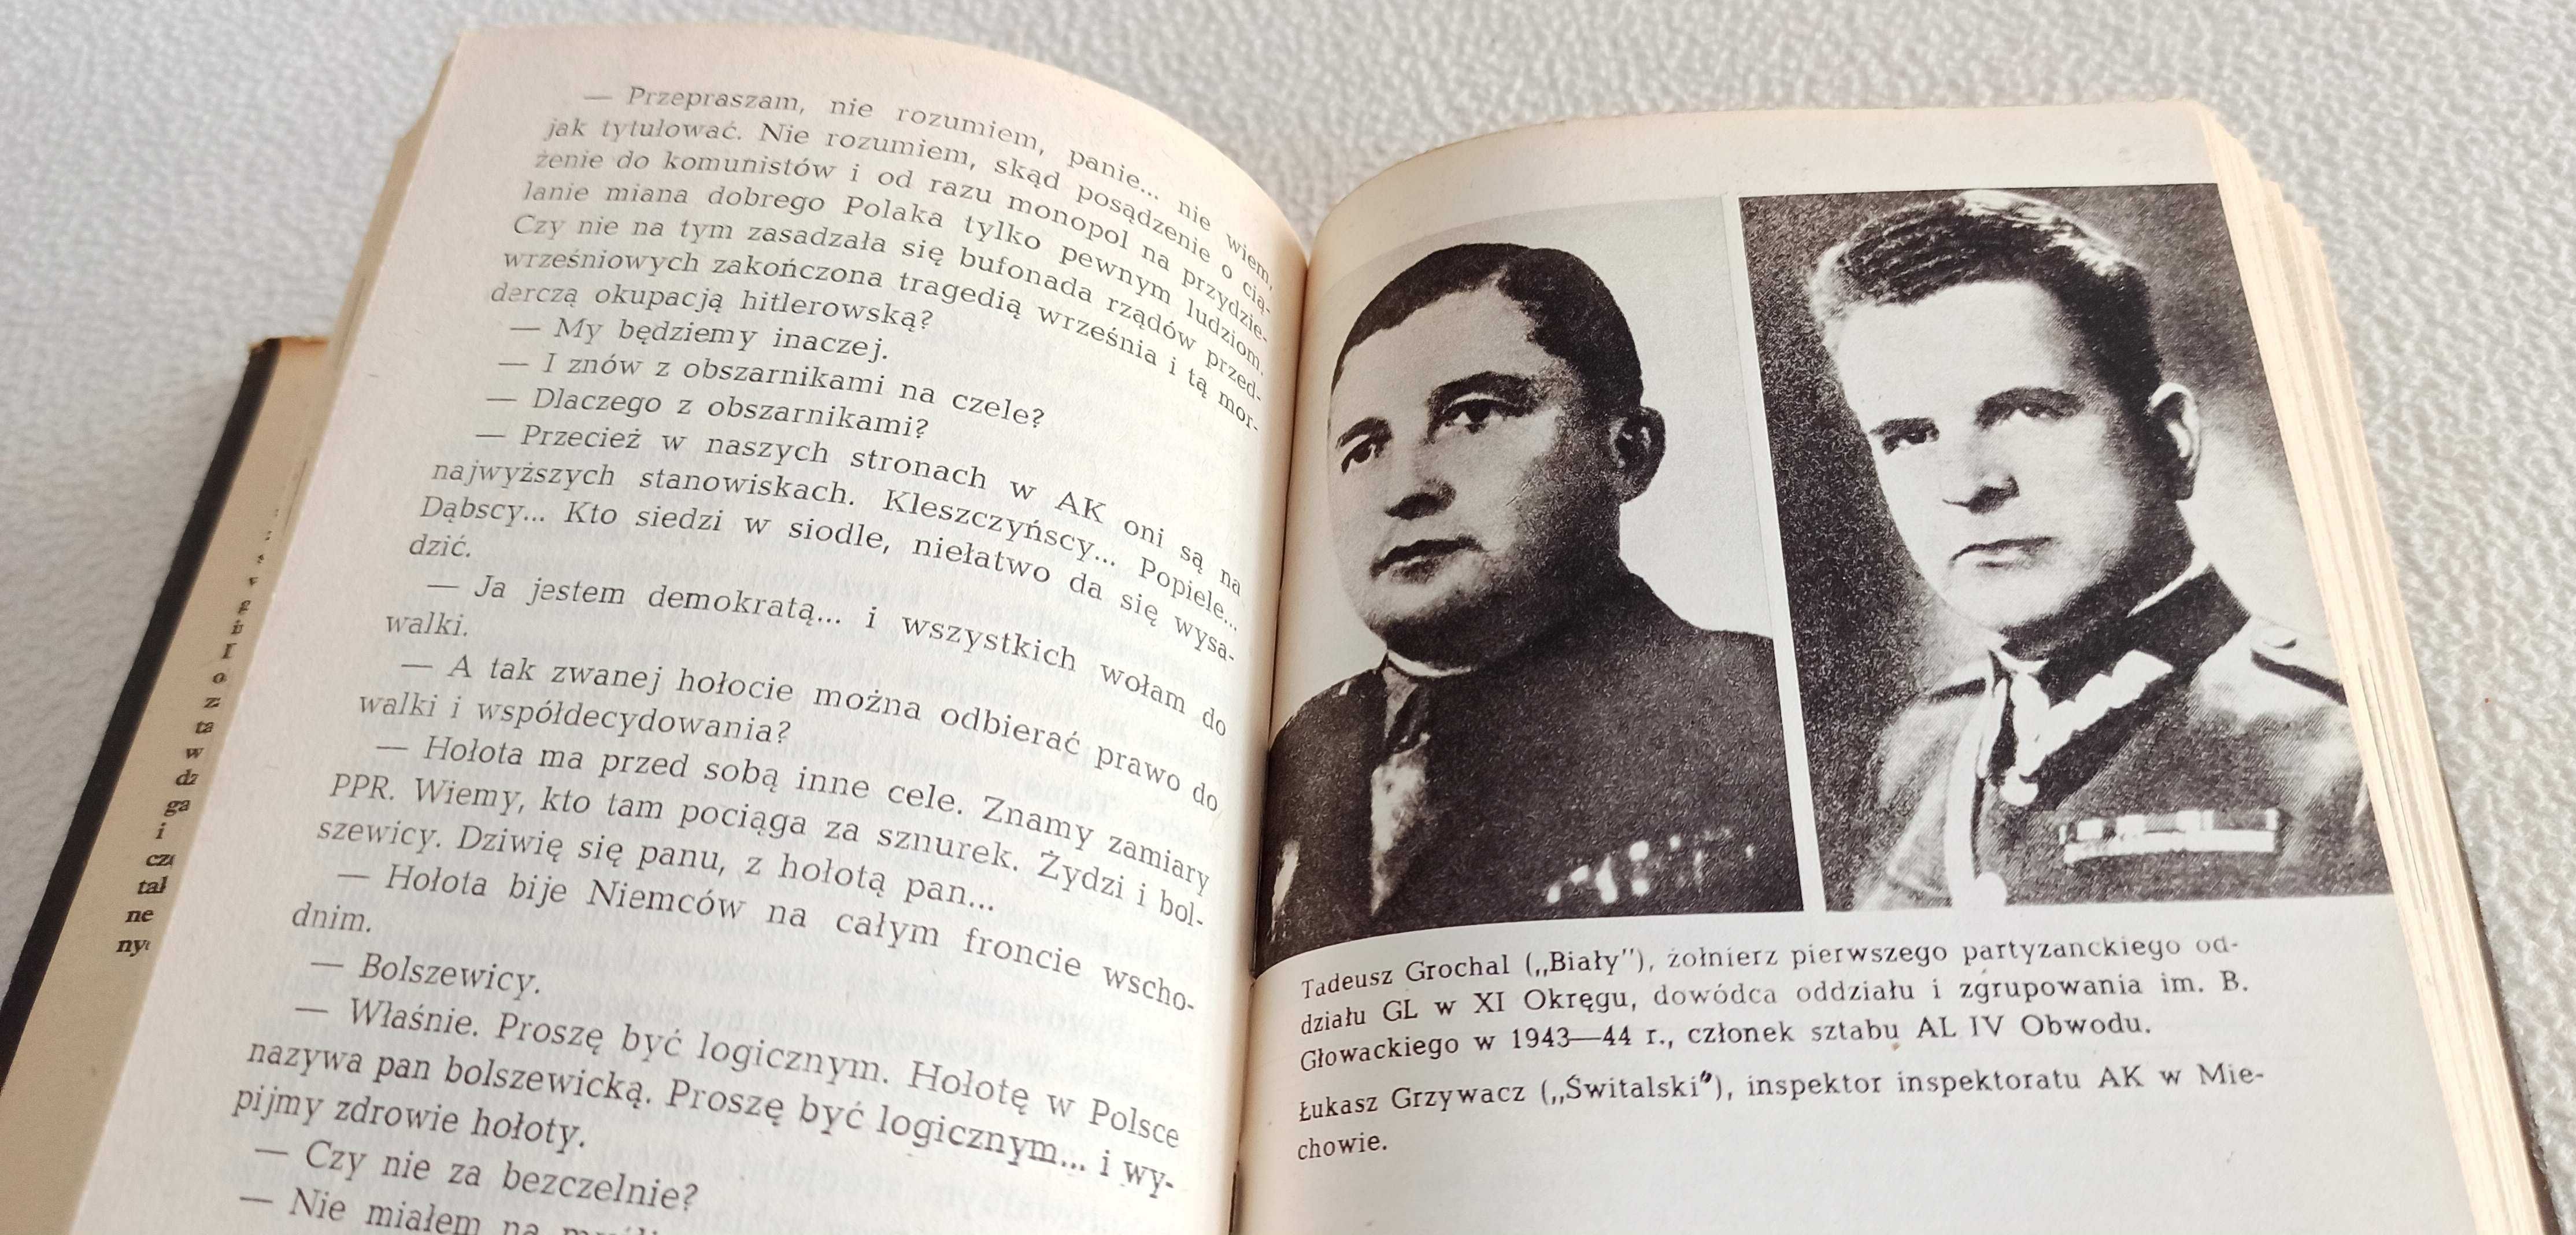 Władysław Machejek - Z wojny tej wojny złej II WŚ partyzanci